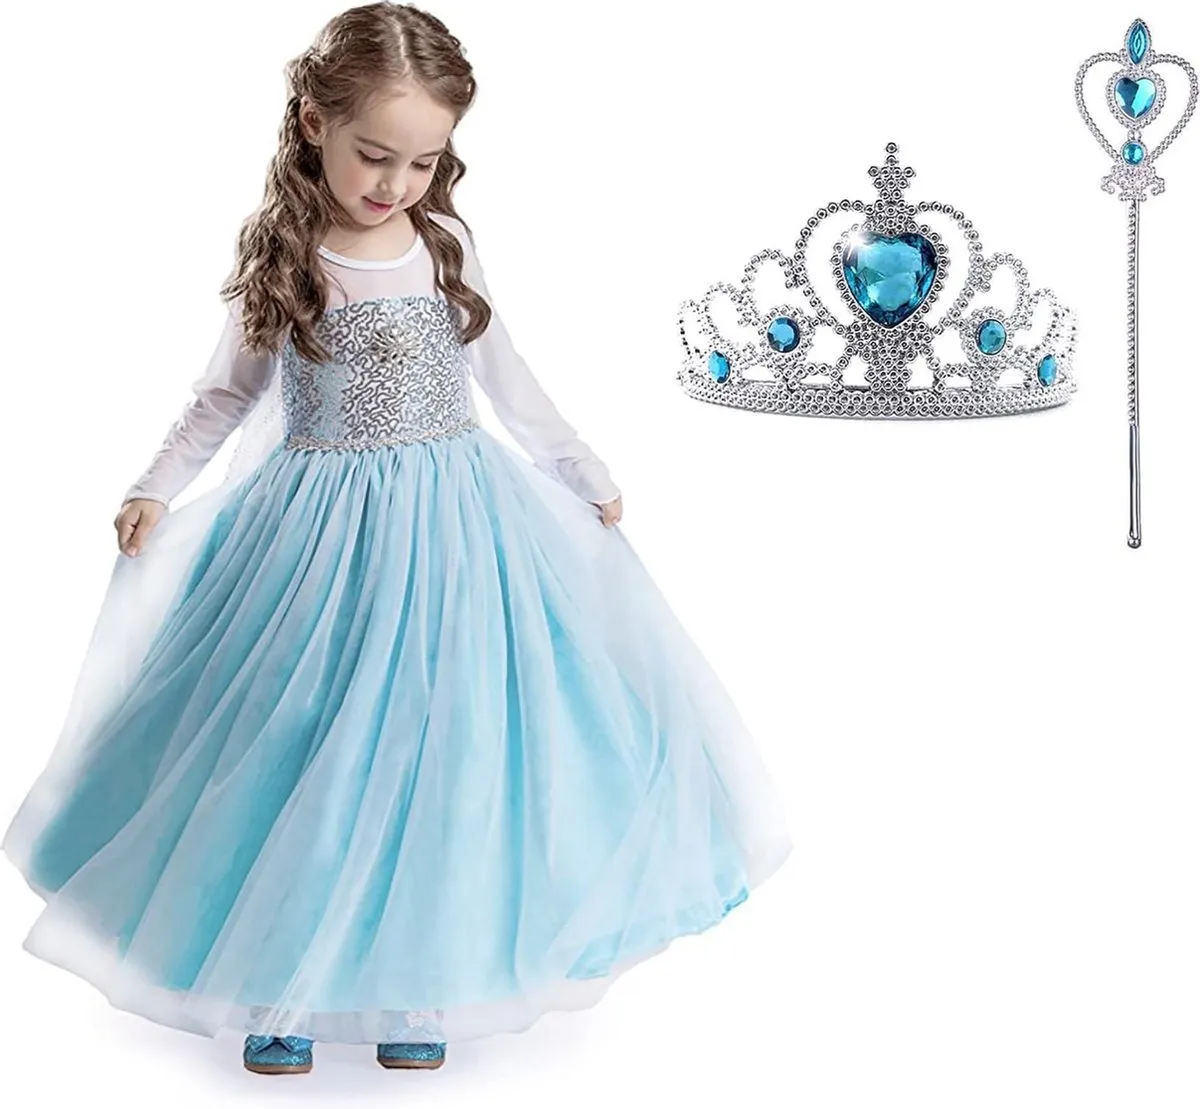 Verkleedkleren meisje - Frozen - Elsa Jurk Sleep - maat 116/122 (130) Prinsessenjurk Meisje speelgoed